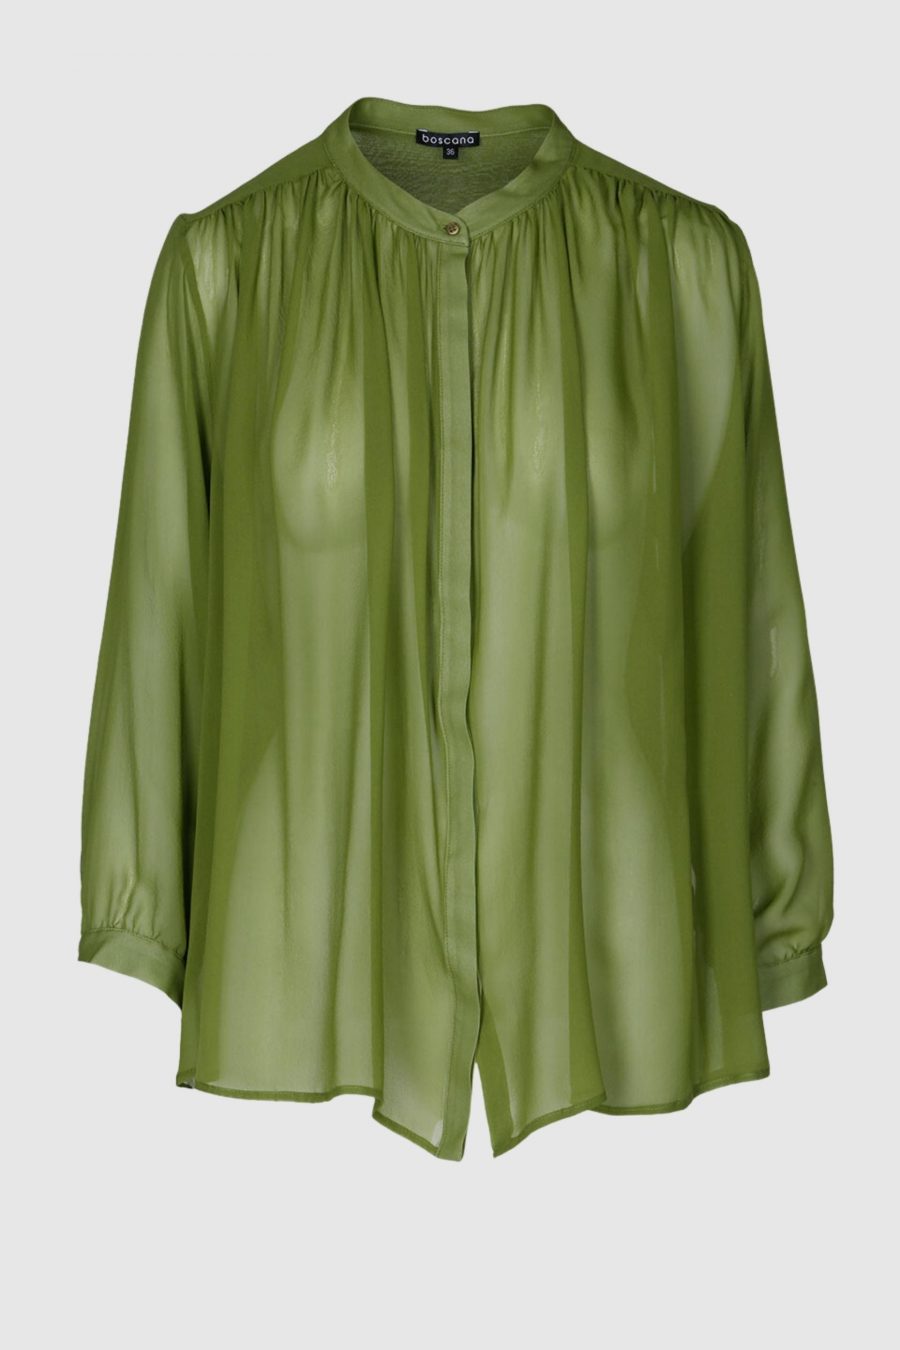 Bluse aus Seide in Grün, Creme, Schwarz, transparent, kleiner Stehkragen, verkürzter Arm, Sommerbluse, Seidenbluse